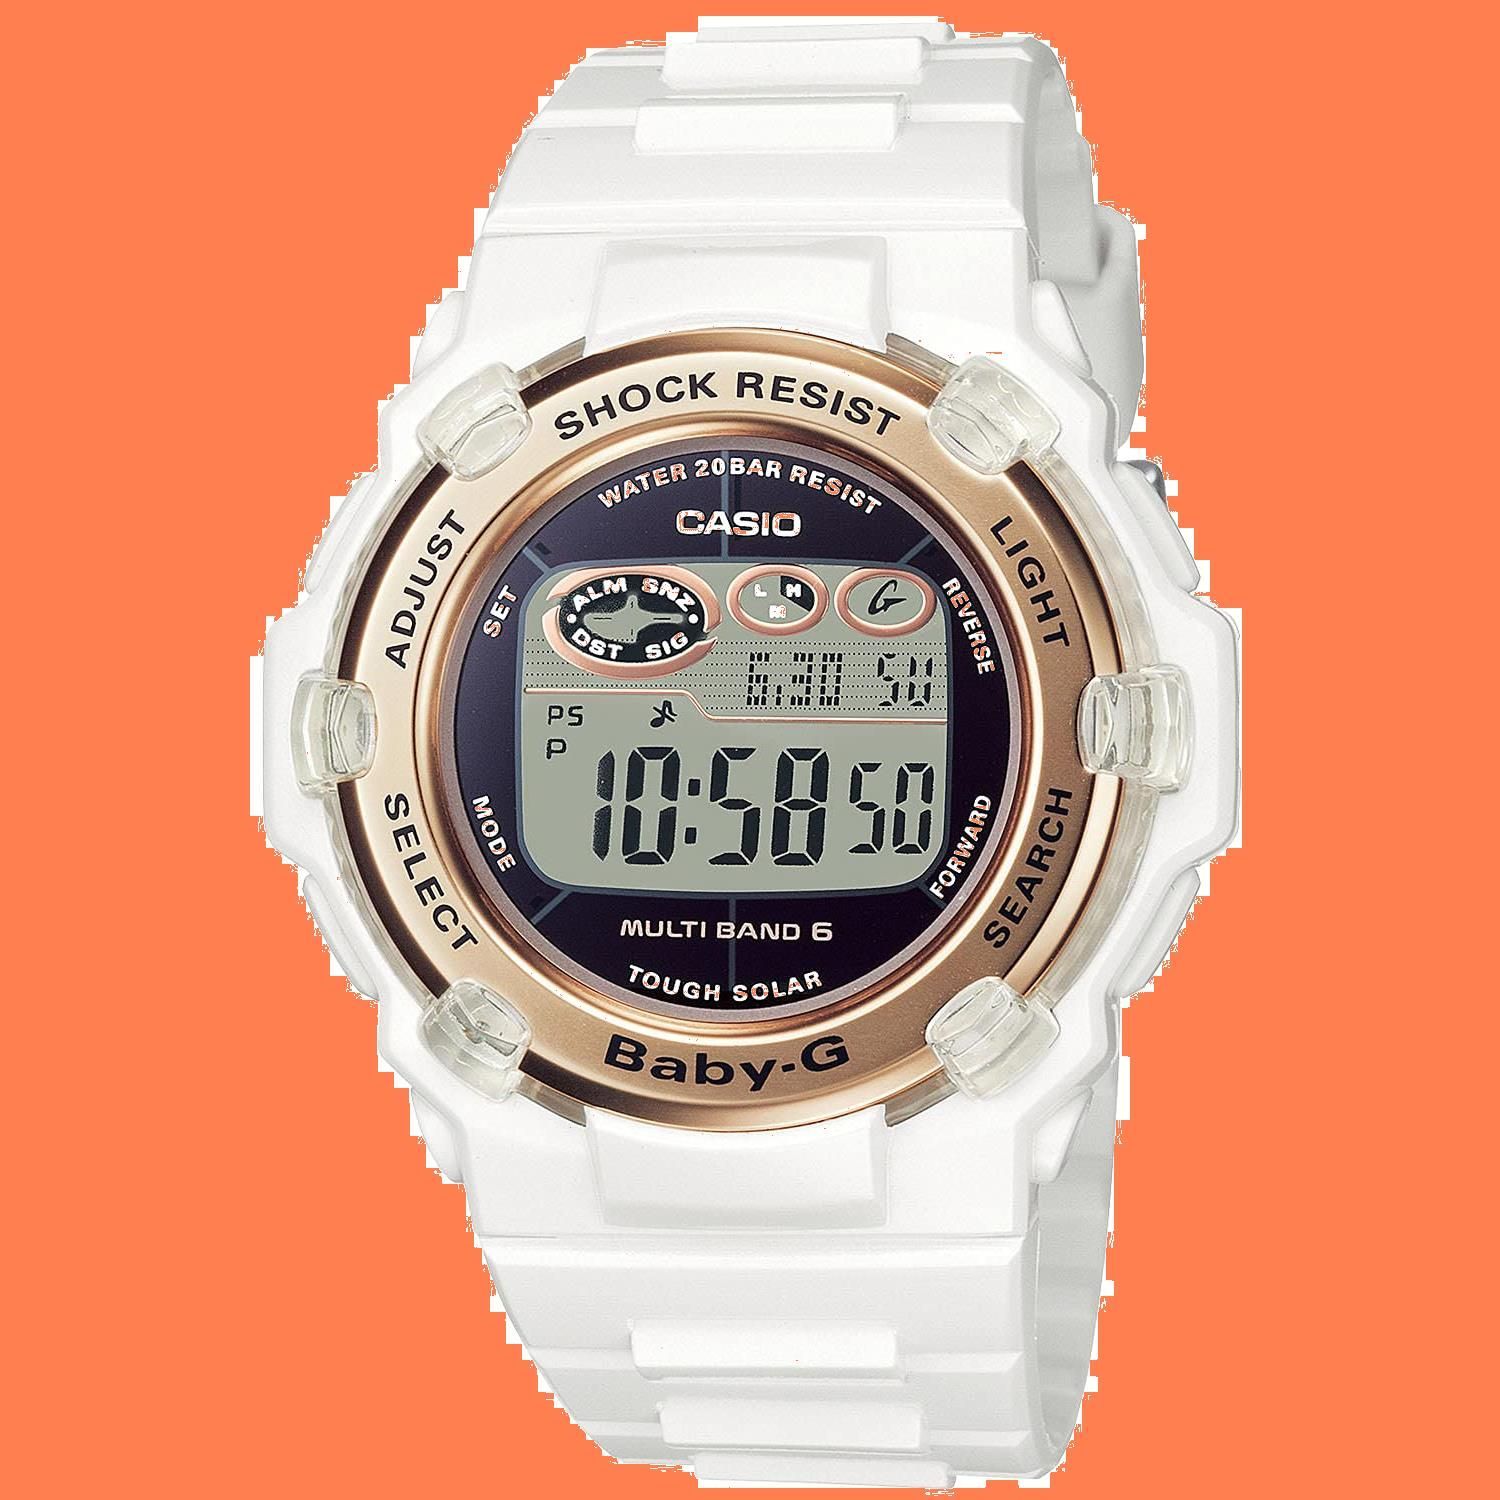 [カシオ] 腕時計 ベビージー 国内正規品 スーパーイルミネータータイプ(高輝度